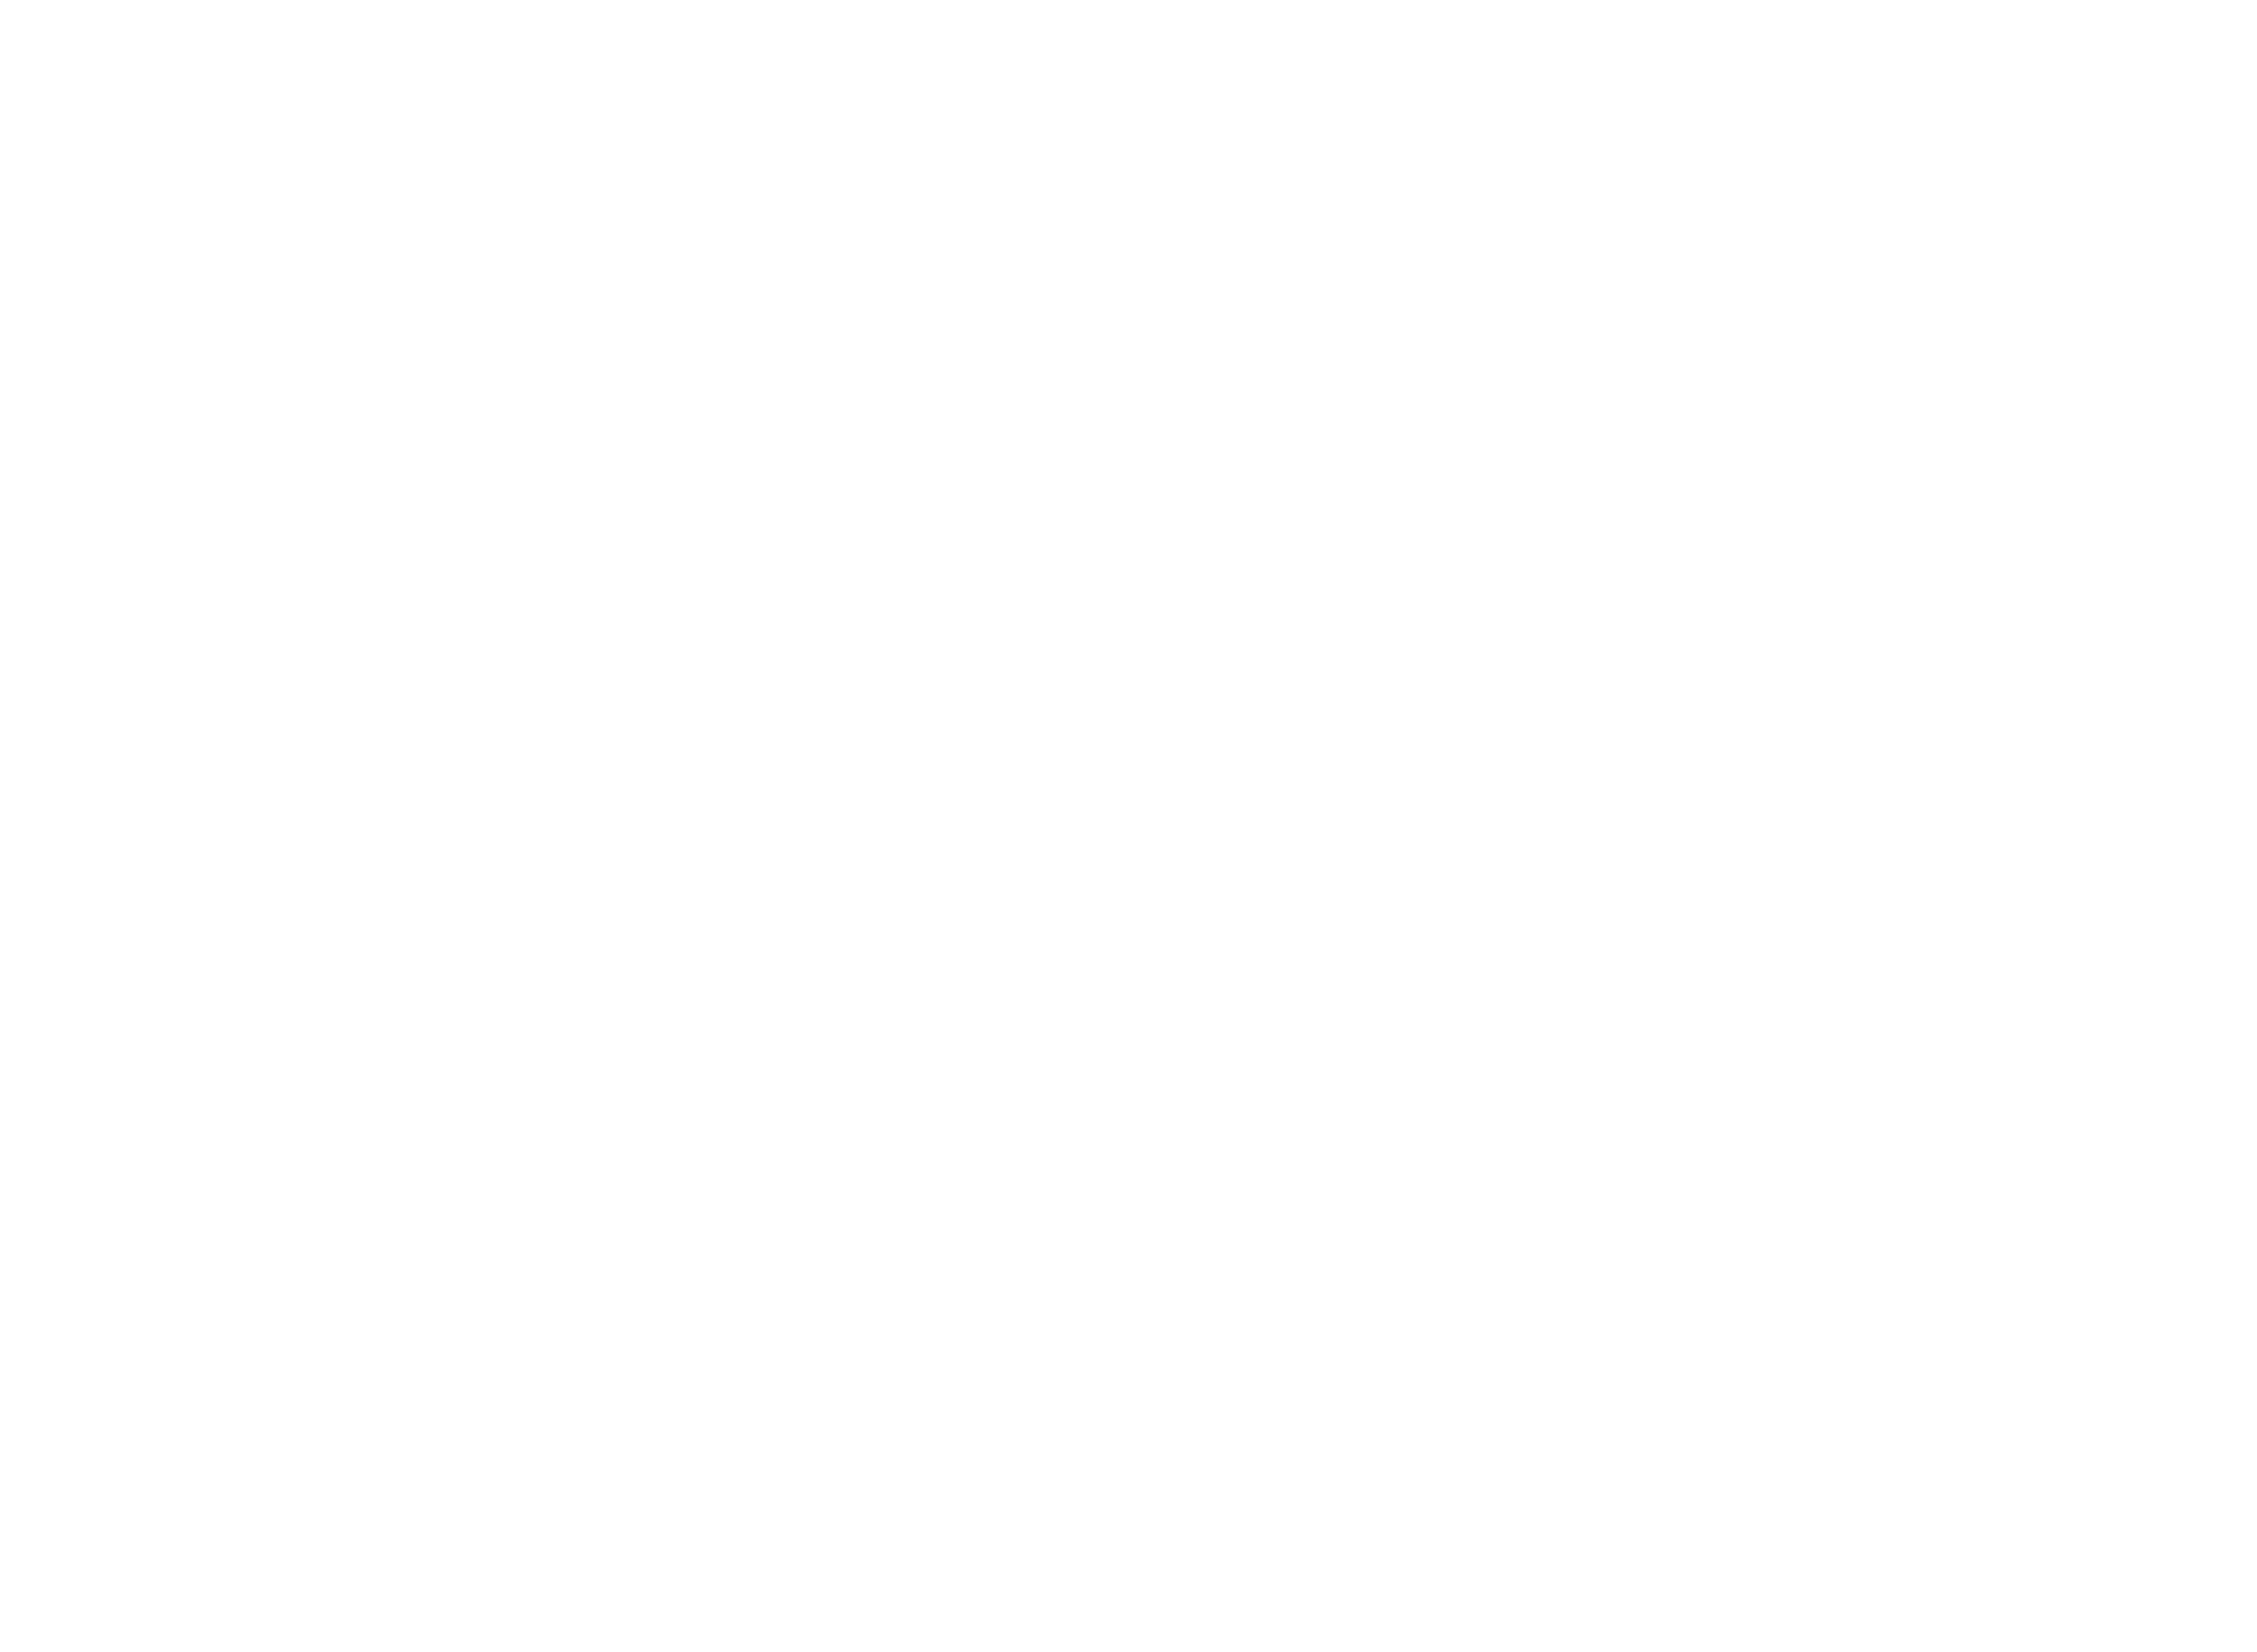 Seven Dynamic